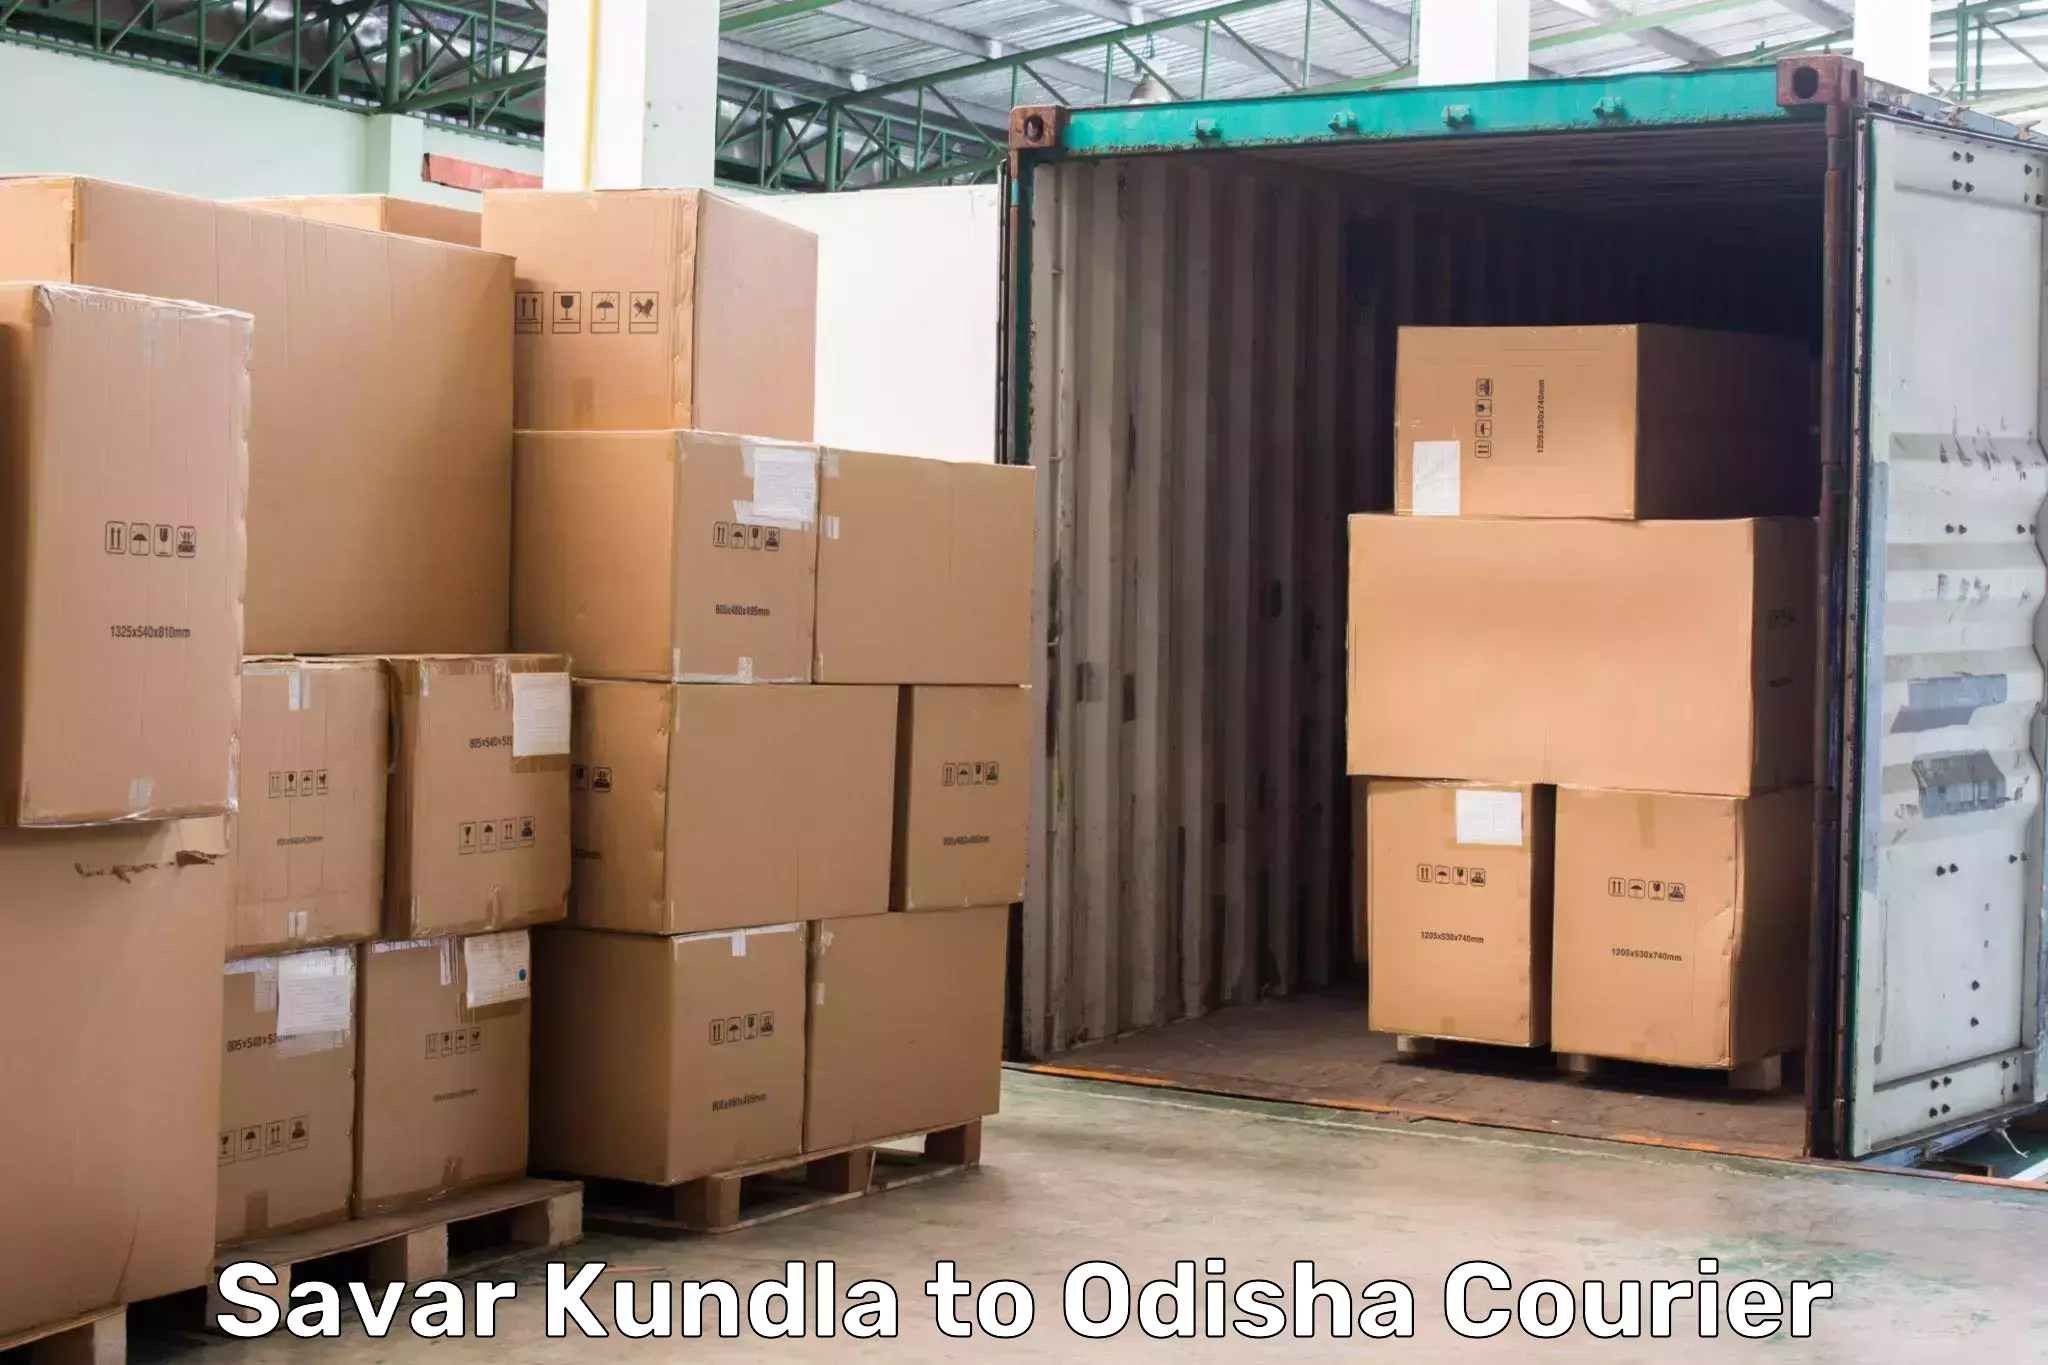 Global courier networks Savar Kundla to Rayagada